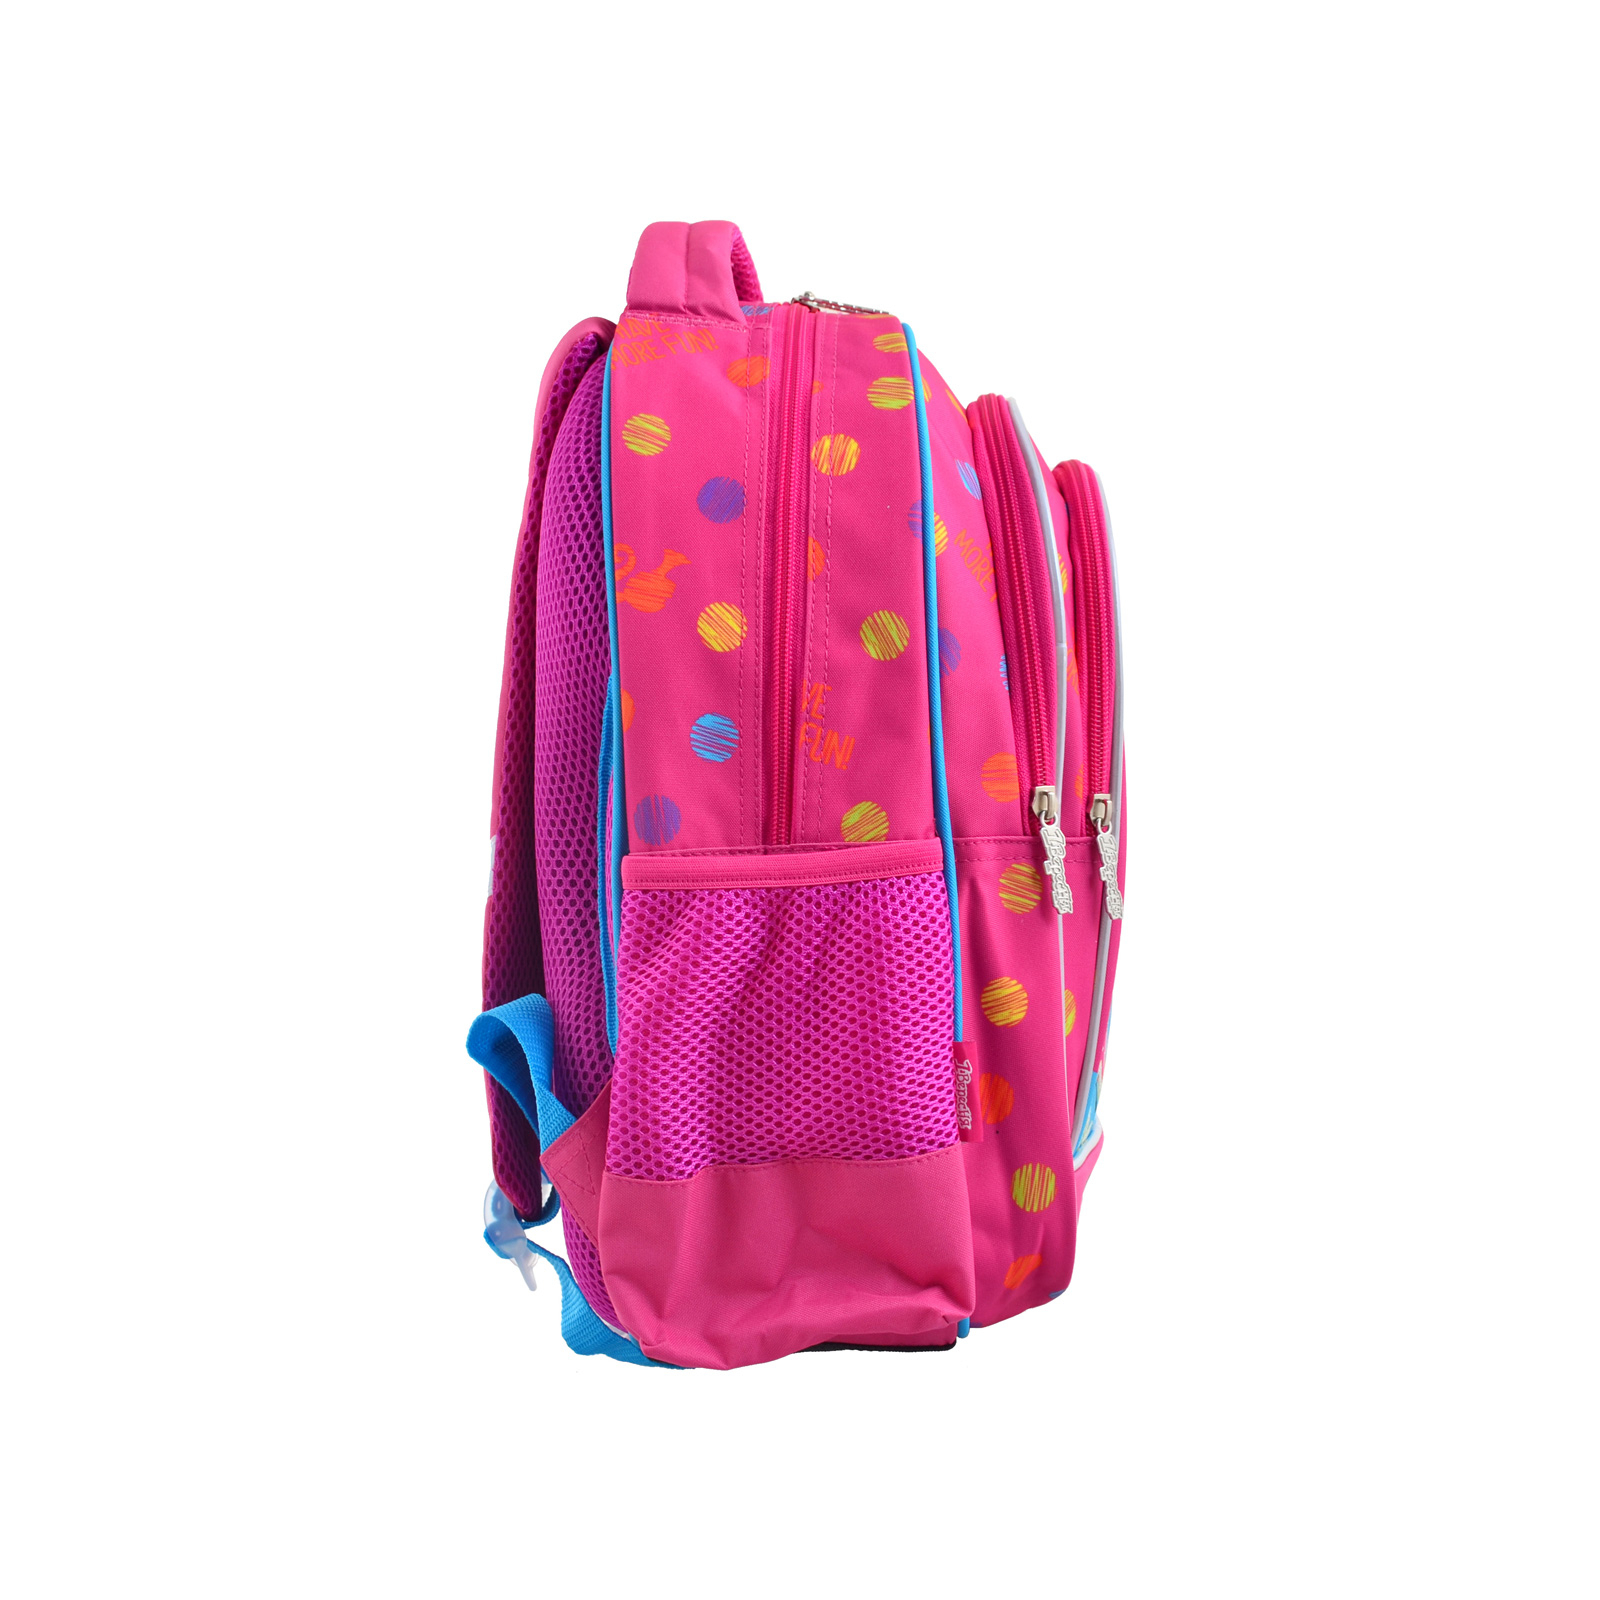 Рюкзак школьный 1 вересня S-22 Barbie (556335) изображение 4